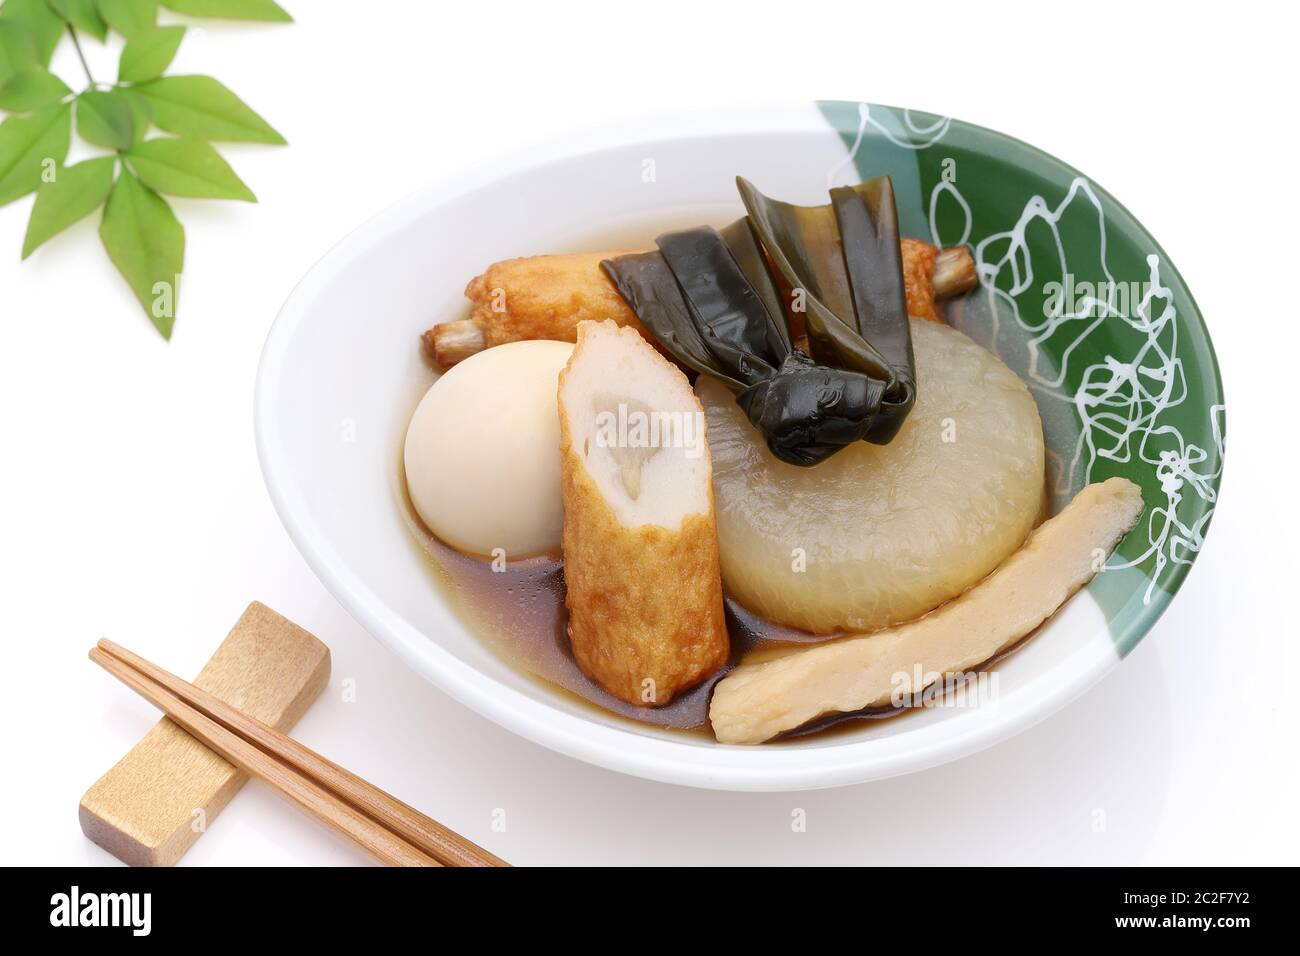 La nourriture japonaise, Oden dans un bol sur fond blanc Banque D'Images